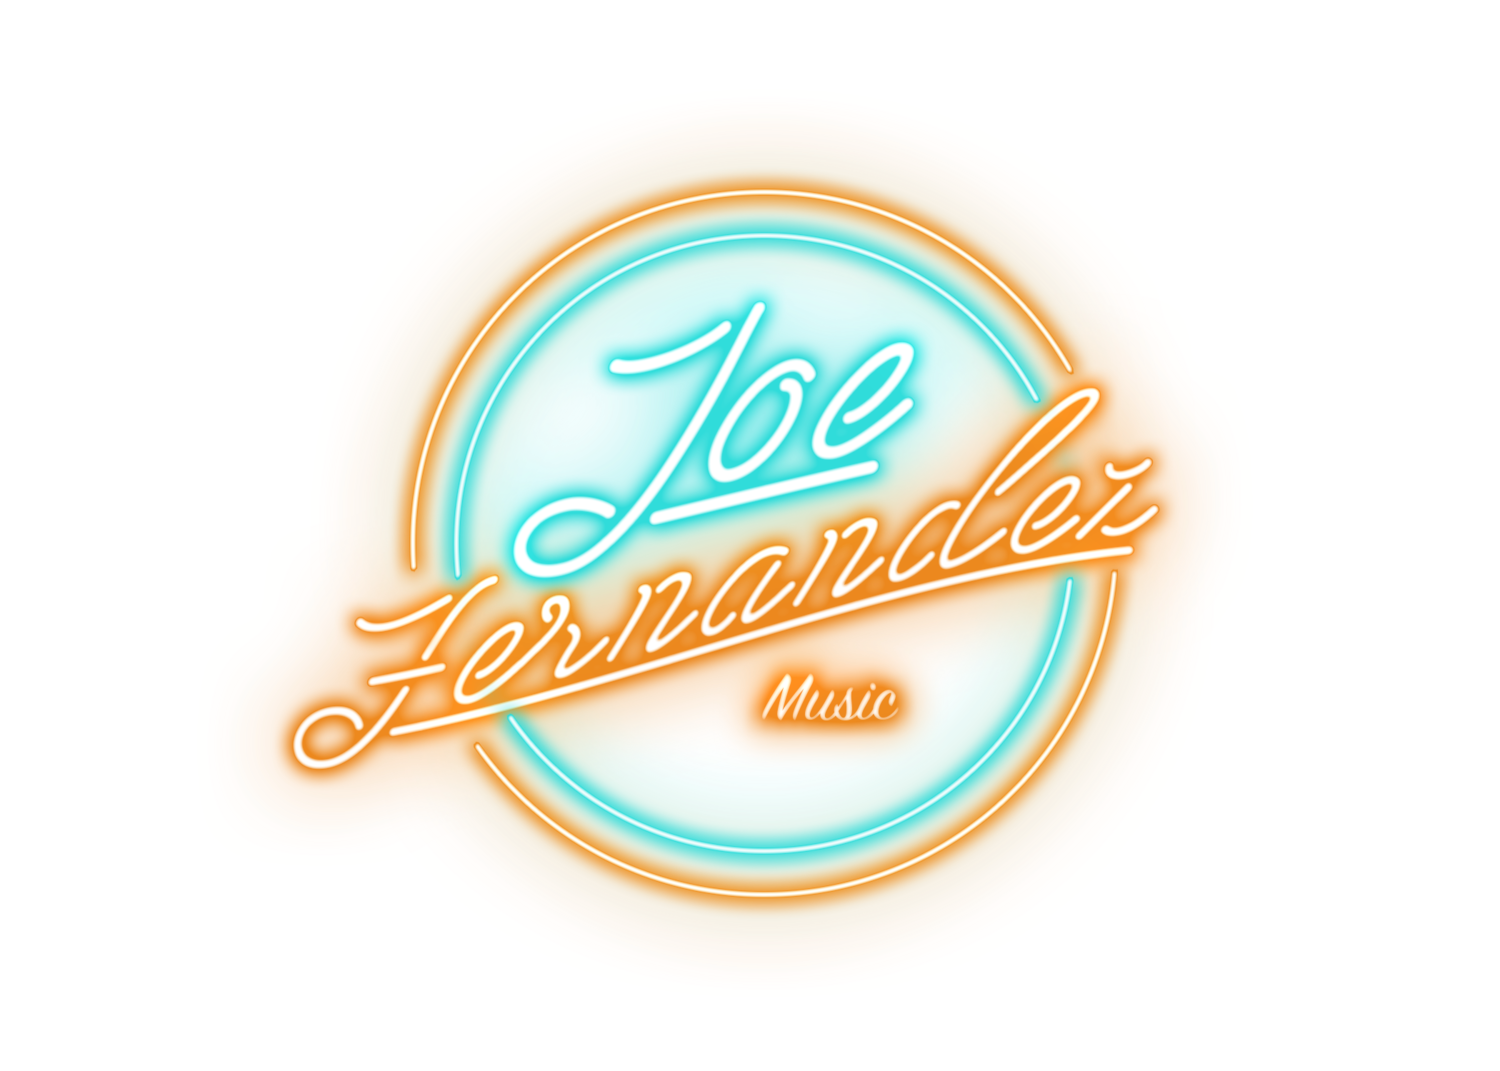 Joe Fernandez Music